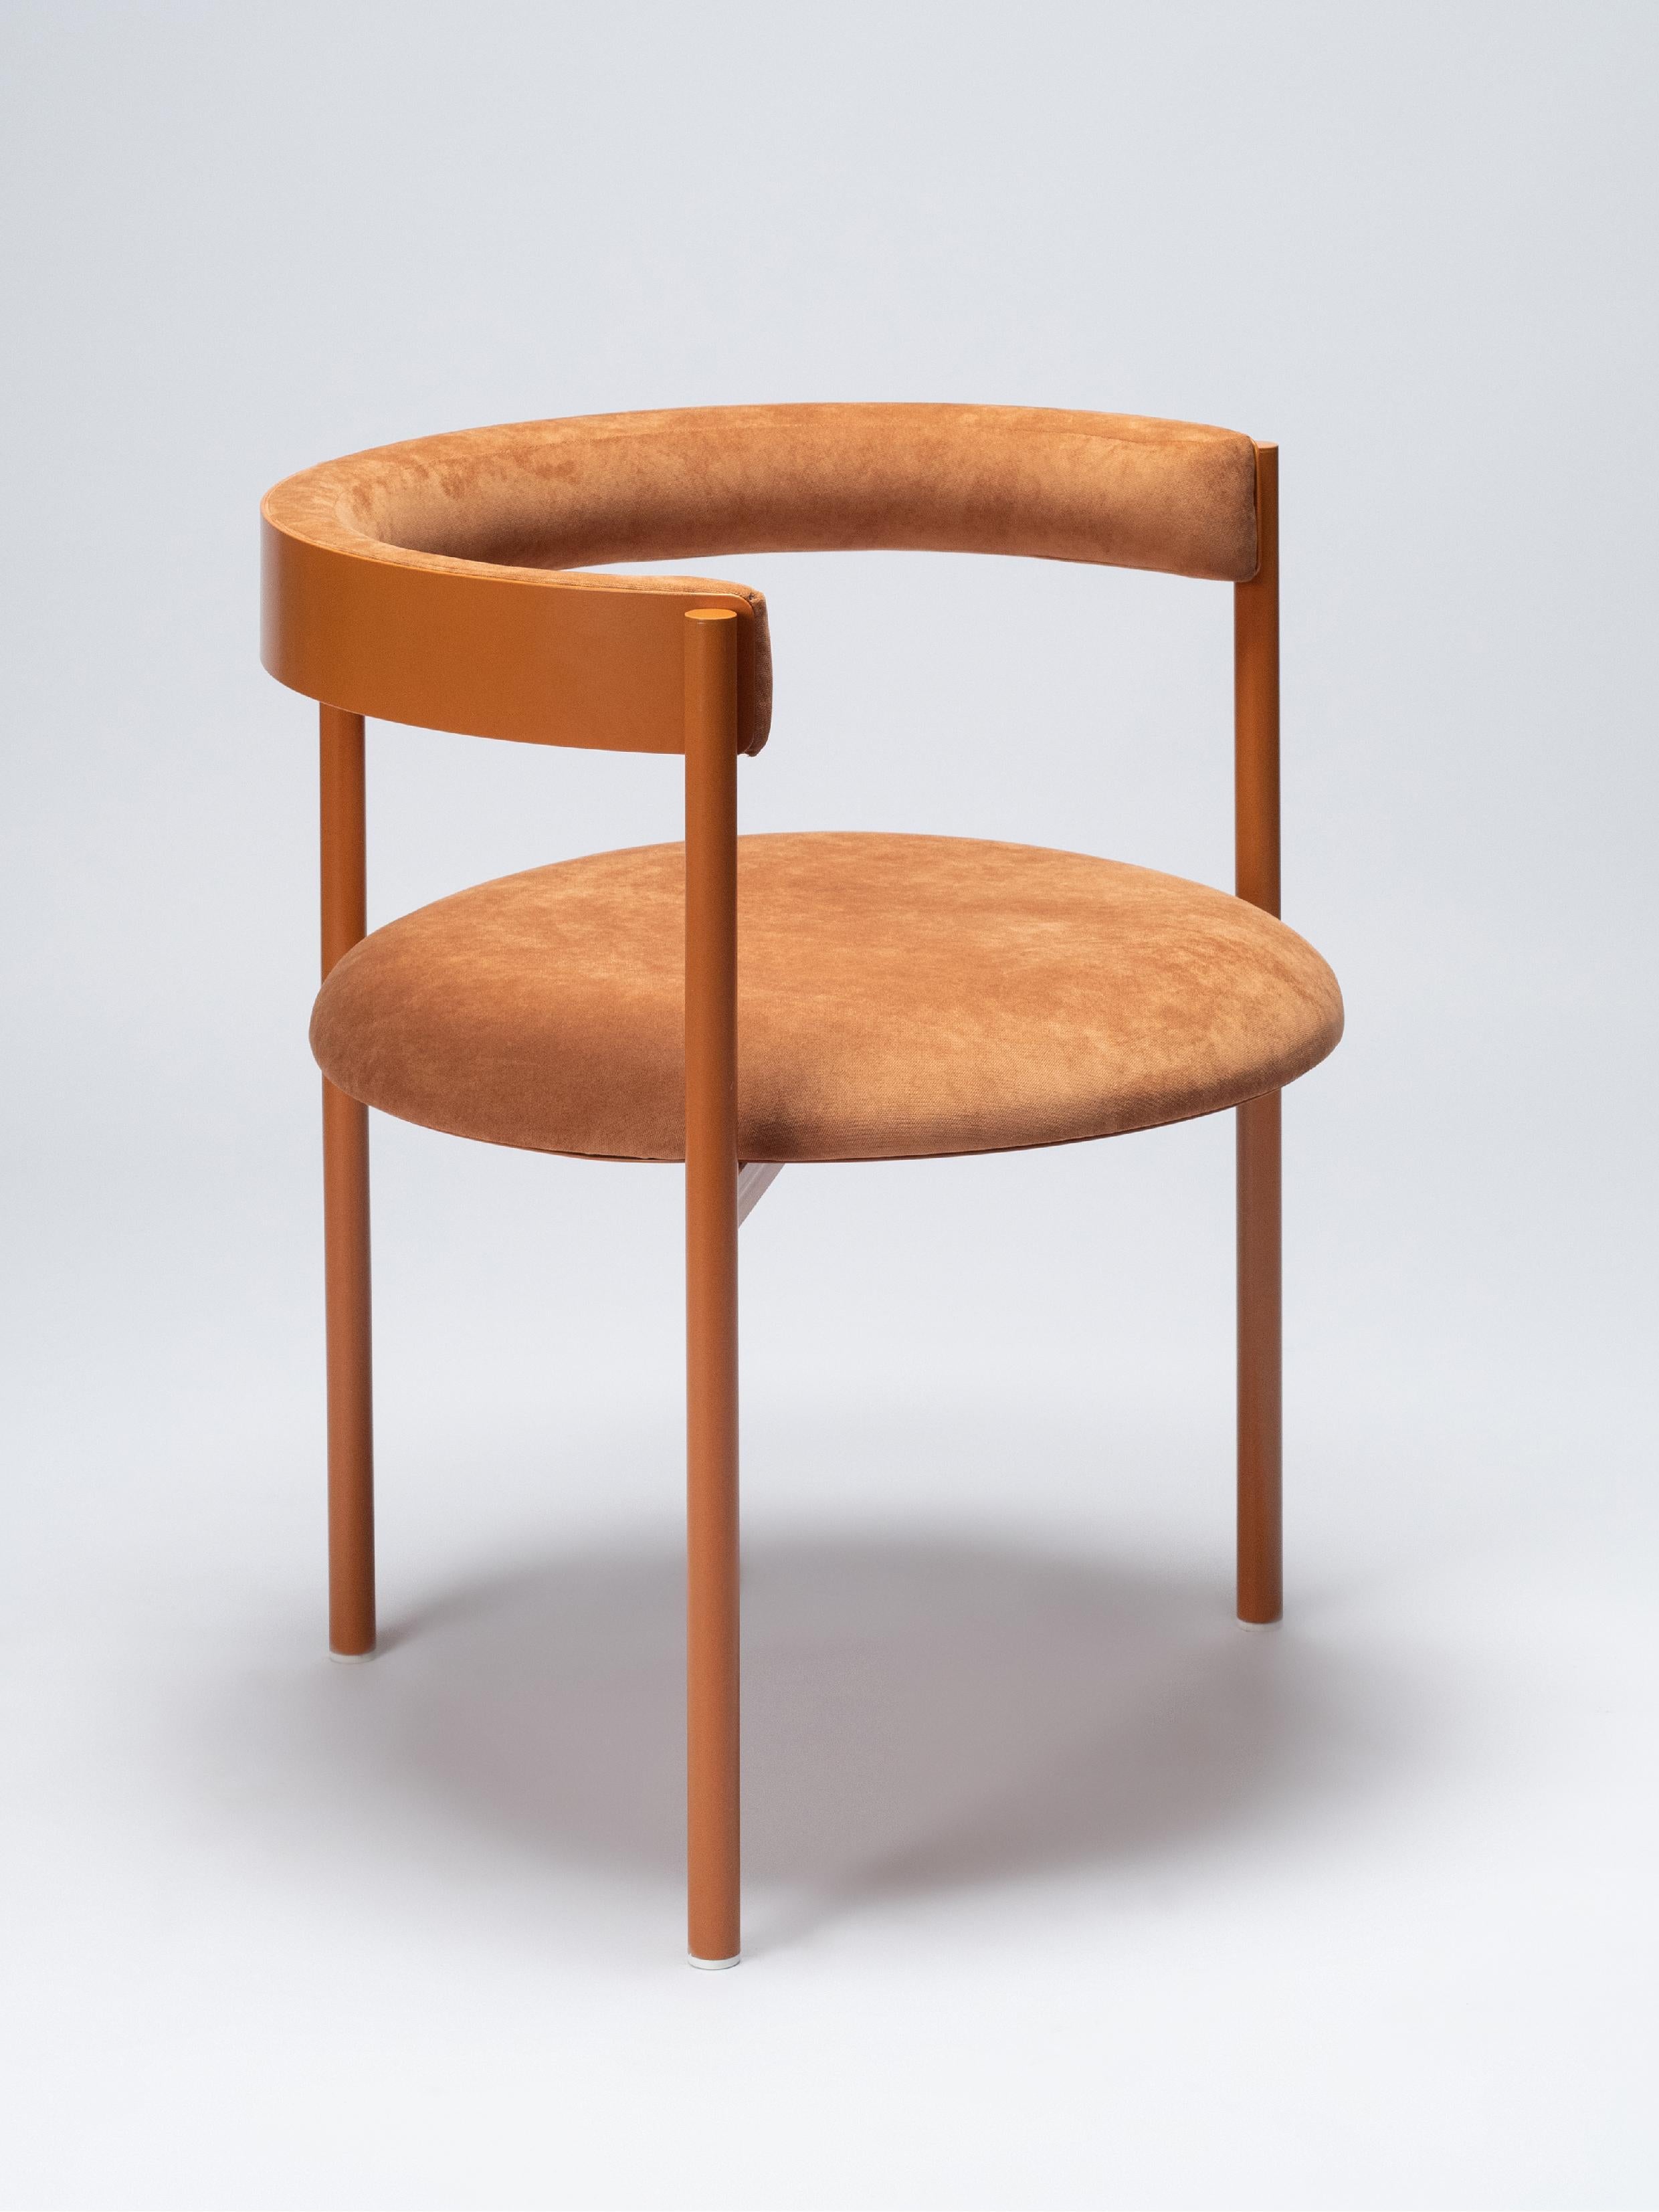 Der elegante und bequeme Stuhl Aro ist mit Präzision und Details gebaut, die den Unterschied ausmachen. 

Hergestellt aus pulverbeschichteten Rundstahlrohren und Samtpolsterung. Sie eignen sich sowohl für den Innen- als auch für den Außenbereich